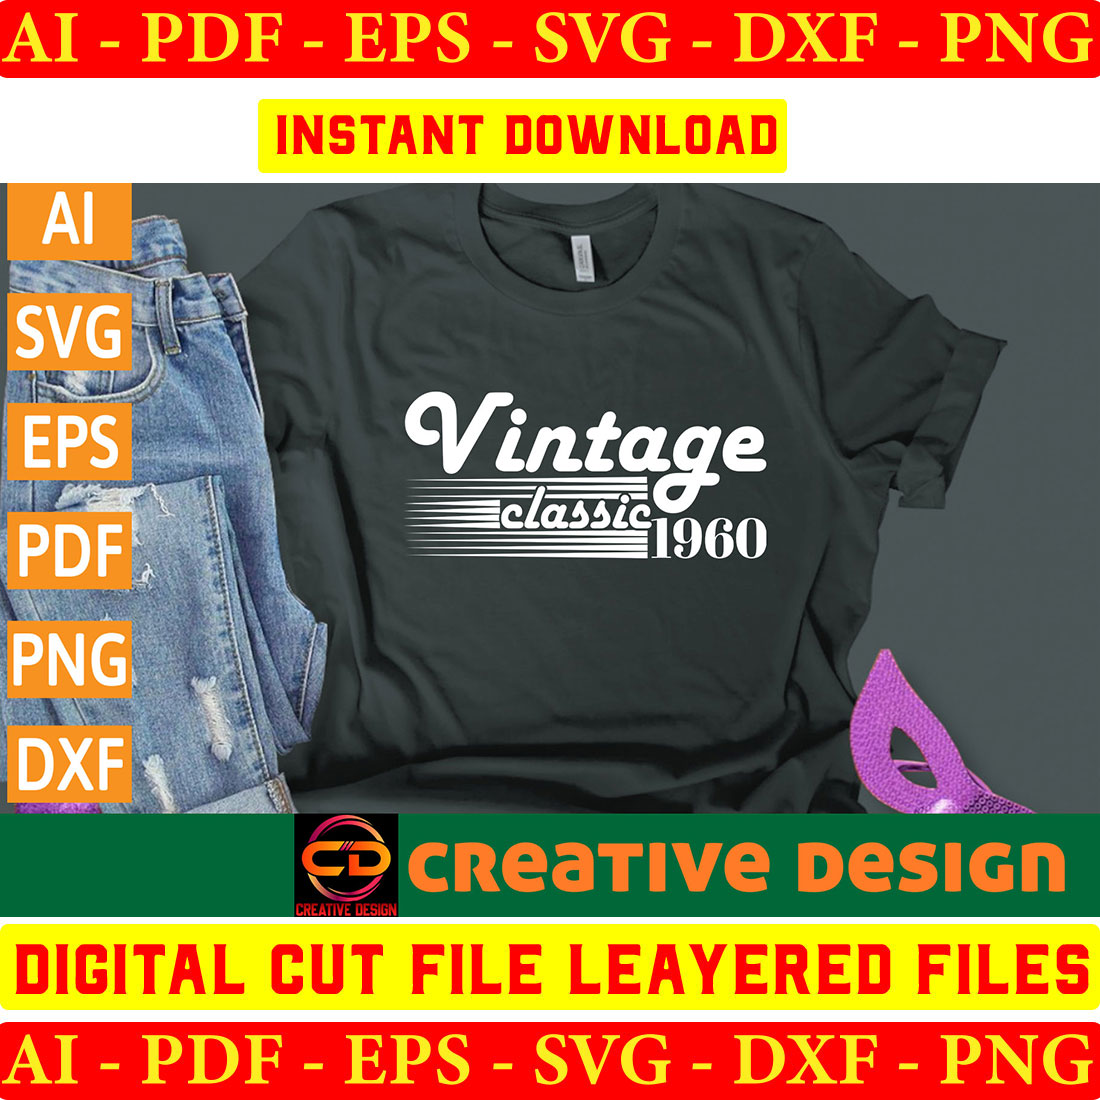 Vintage T-shirt Design Bundle Vol-2 preview image.